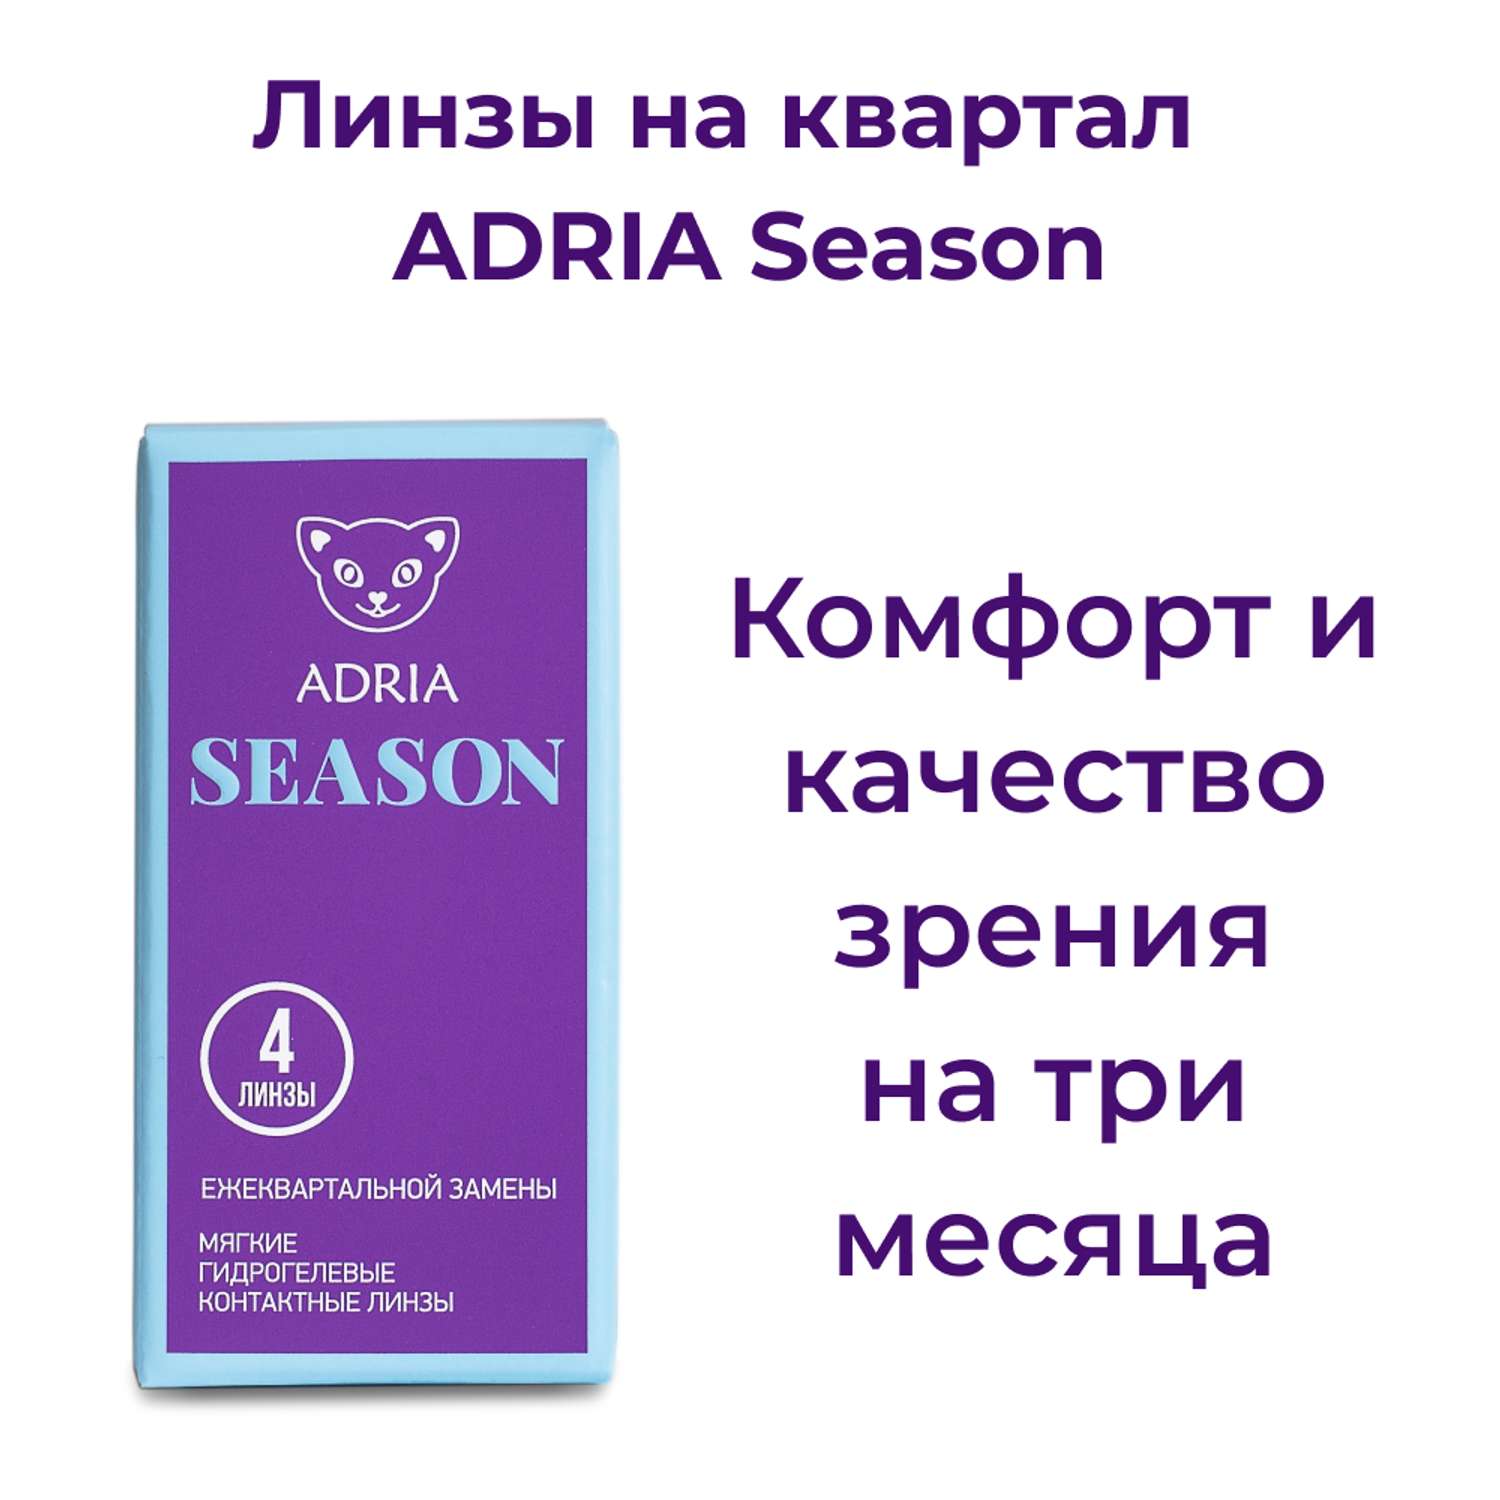 Контактные линзы ADRIA Season 4 линзы R 8.6 -1.00 - фото 2